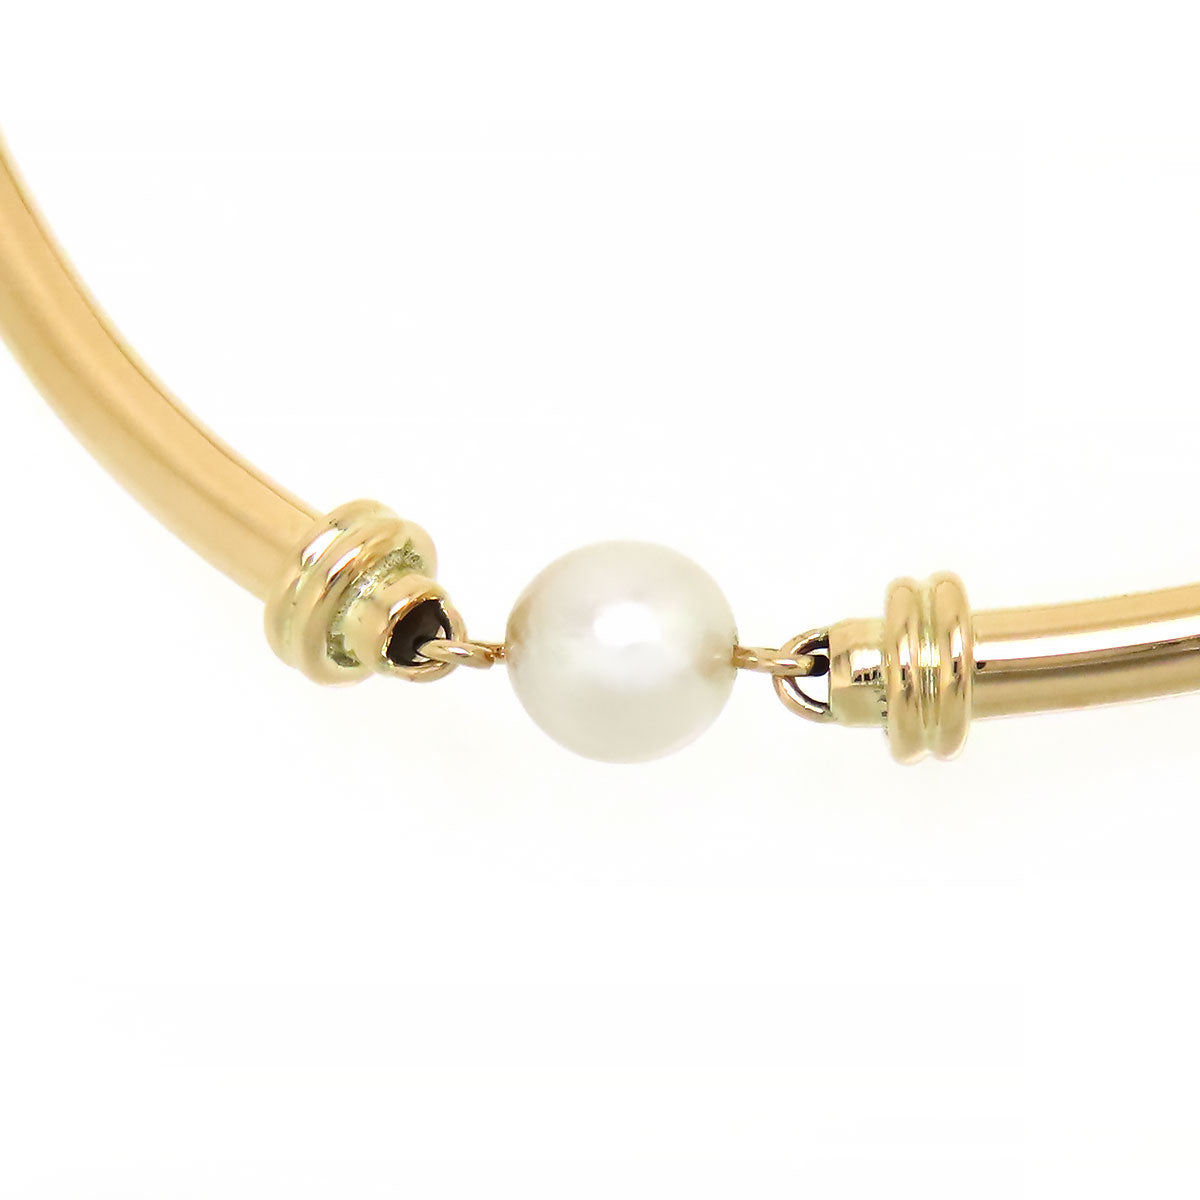 14k Gold Pearl Bracelet